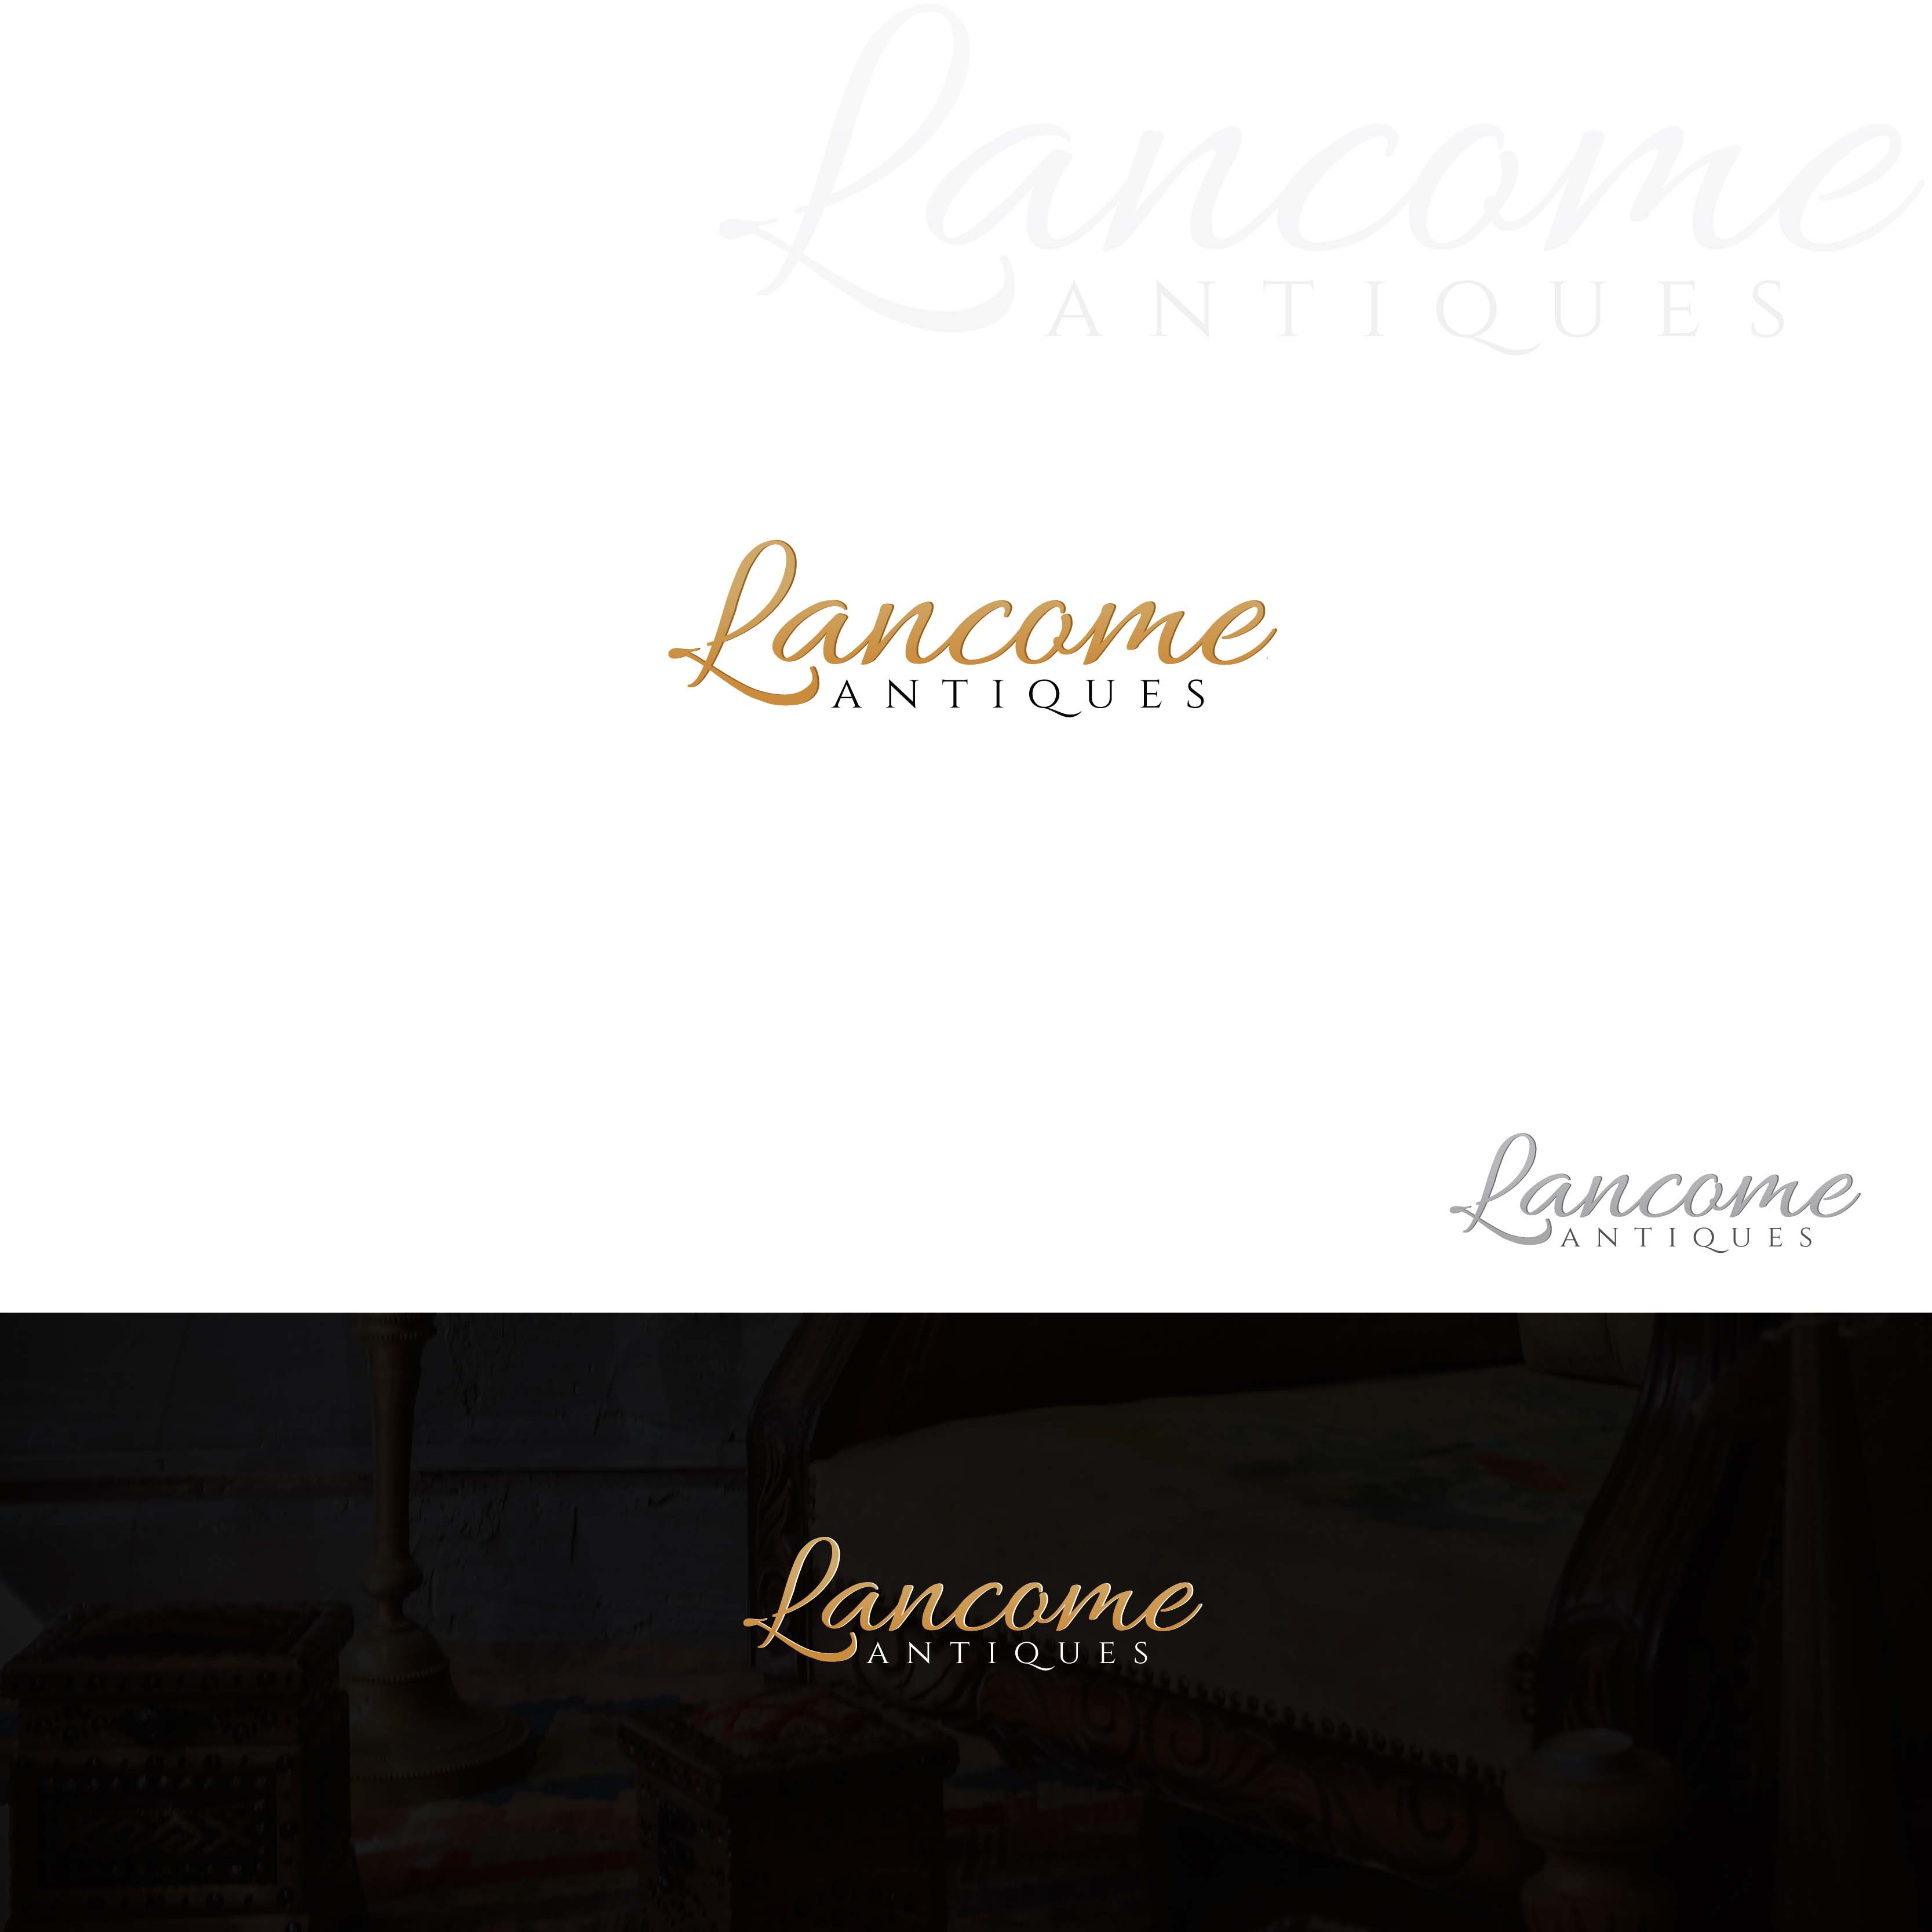 Lancome_Antiques